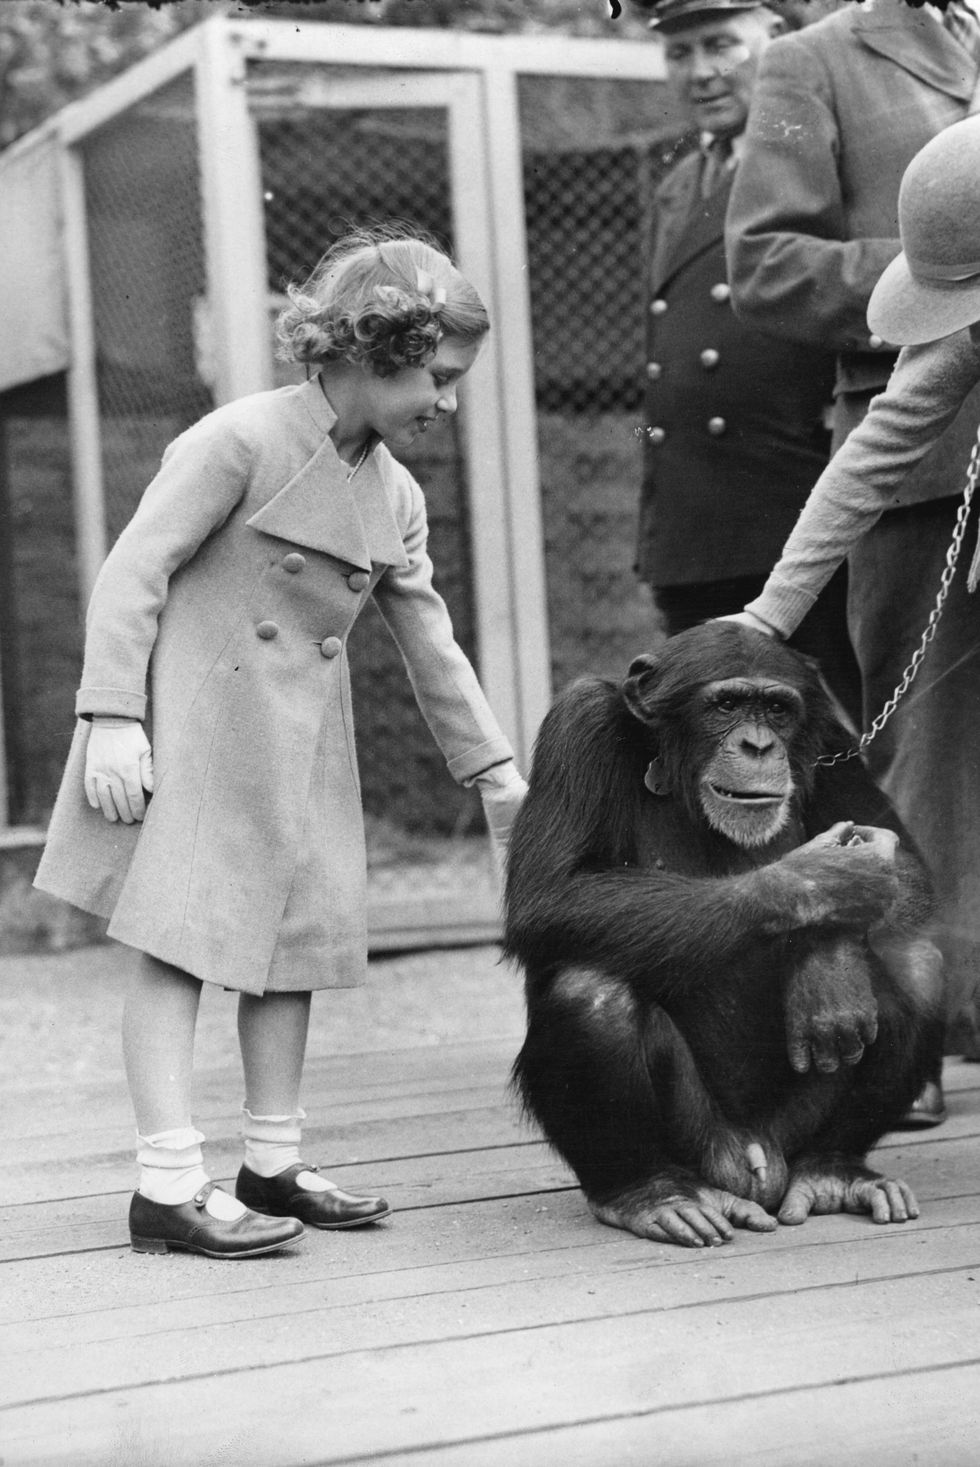 ควีนเอลิซาเบธที่ 2 เมื่อวัยเยาว์ มักสวมใส่รองเท้า Mary Jane เสมอ และนี่คือภาพขณะพระองค์เดินทางไปยังสวนสัตว์ในปี 1930